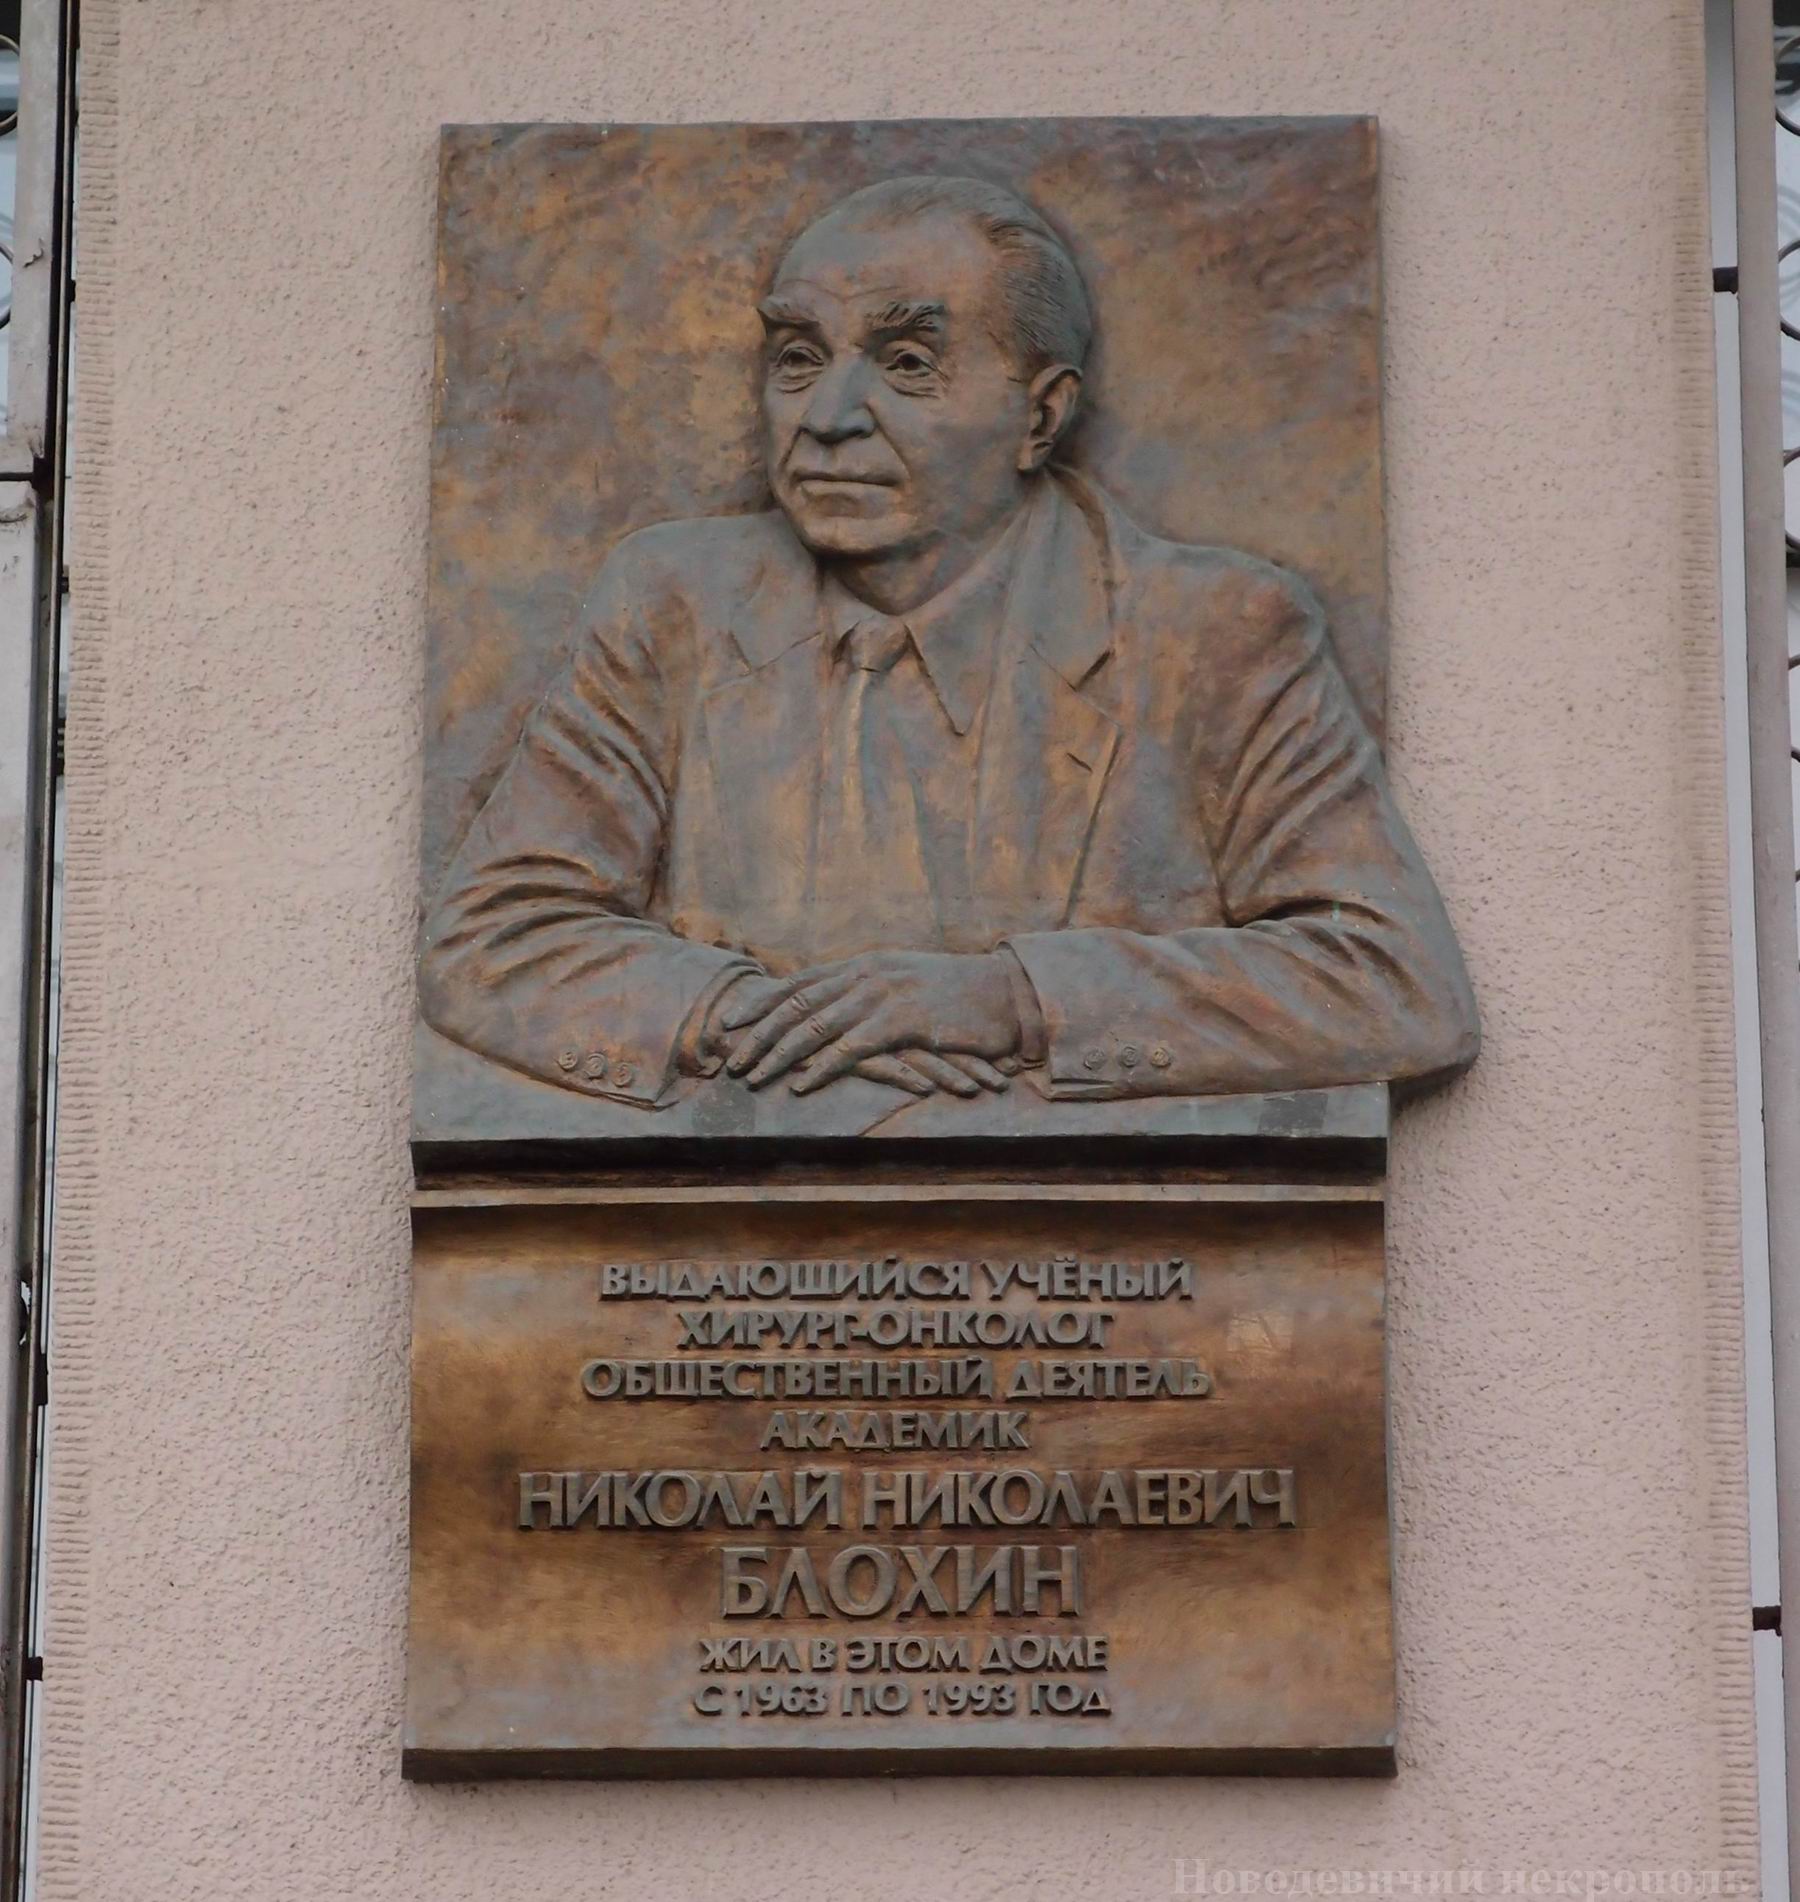 Мемориальная доска Блохину Н.Н. (1912–1993), на Берсеневской набережной, дом 20/2, открыта в 2006.